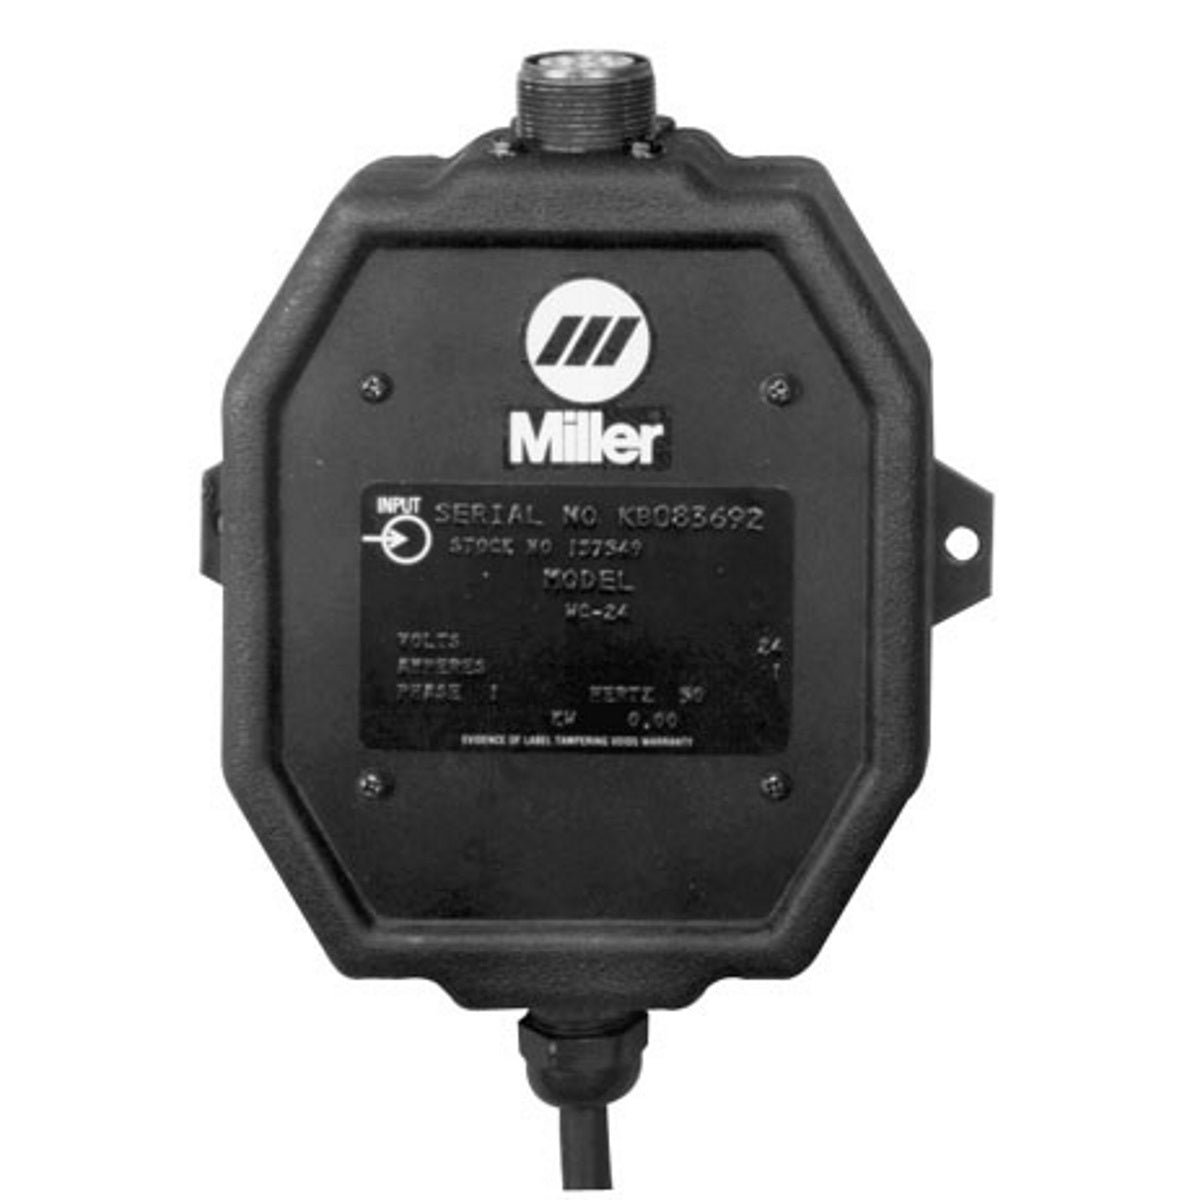 Miller WC-24 Weld Control (137549)